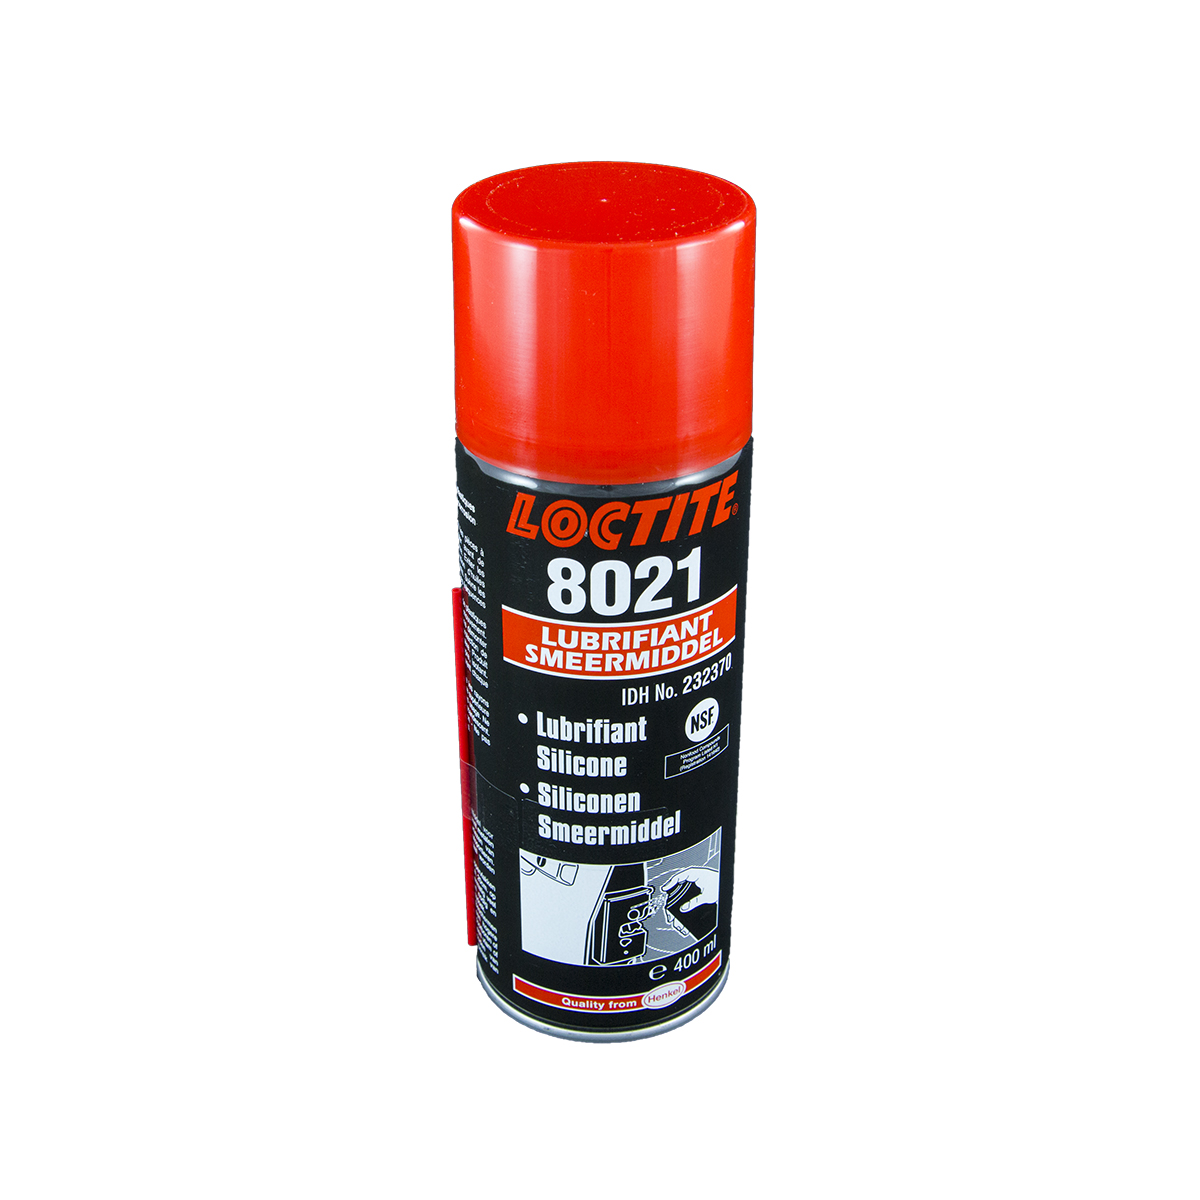 LOCTITE LB 8021 400ml lubricante aceite de silicona en spray